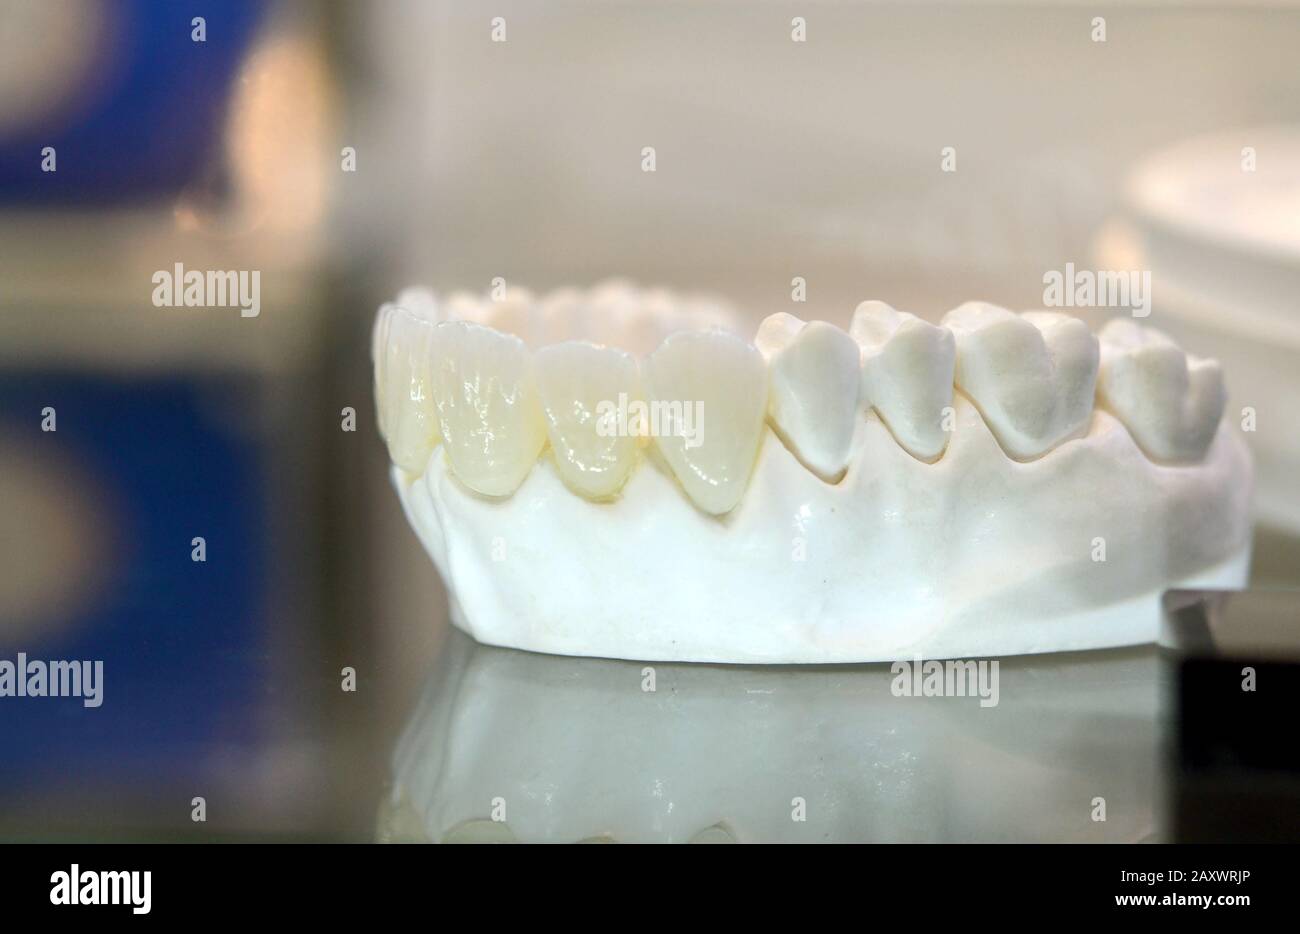 modello di denti umani con denti artificiali in primo piano Foto Stock